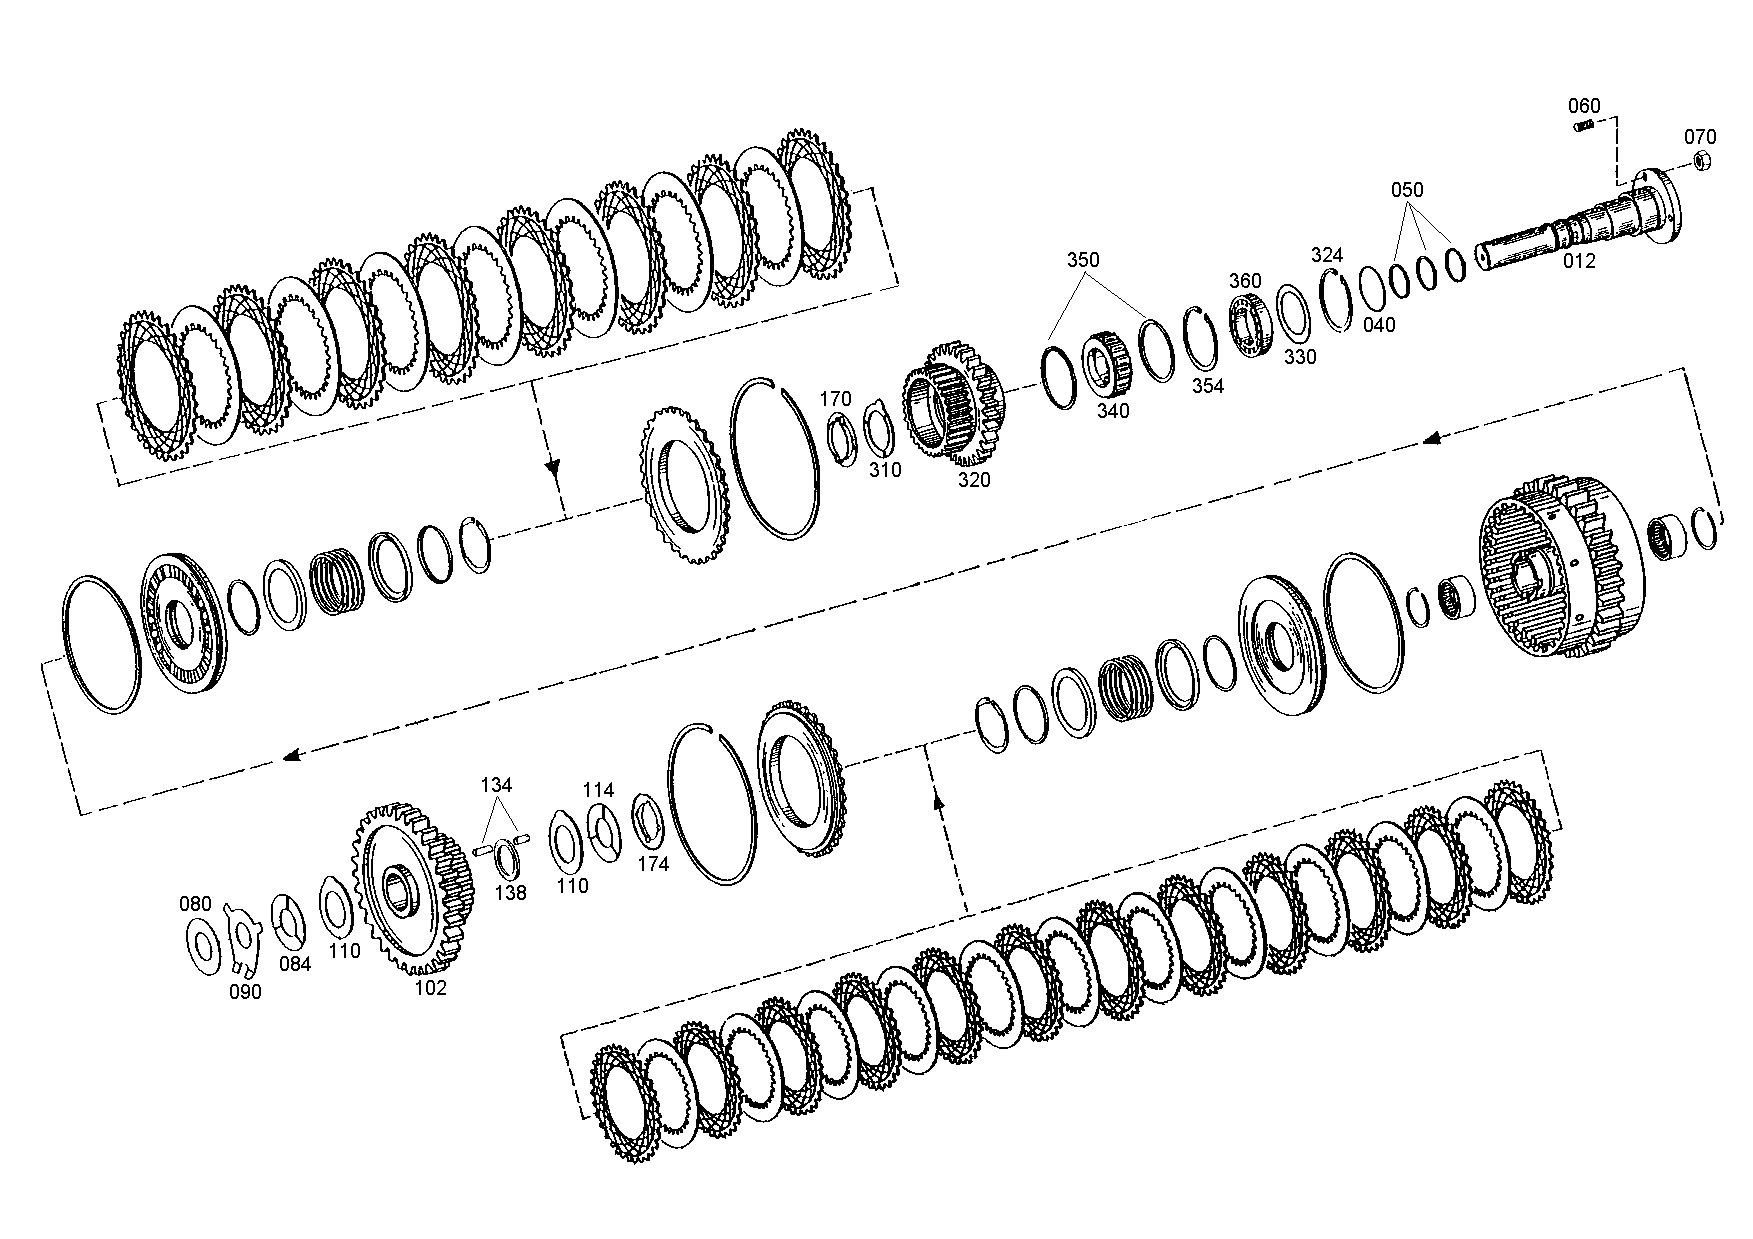 drawing for NACCO-IRV 1390850 - ANGLE RING (figure 4)